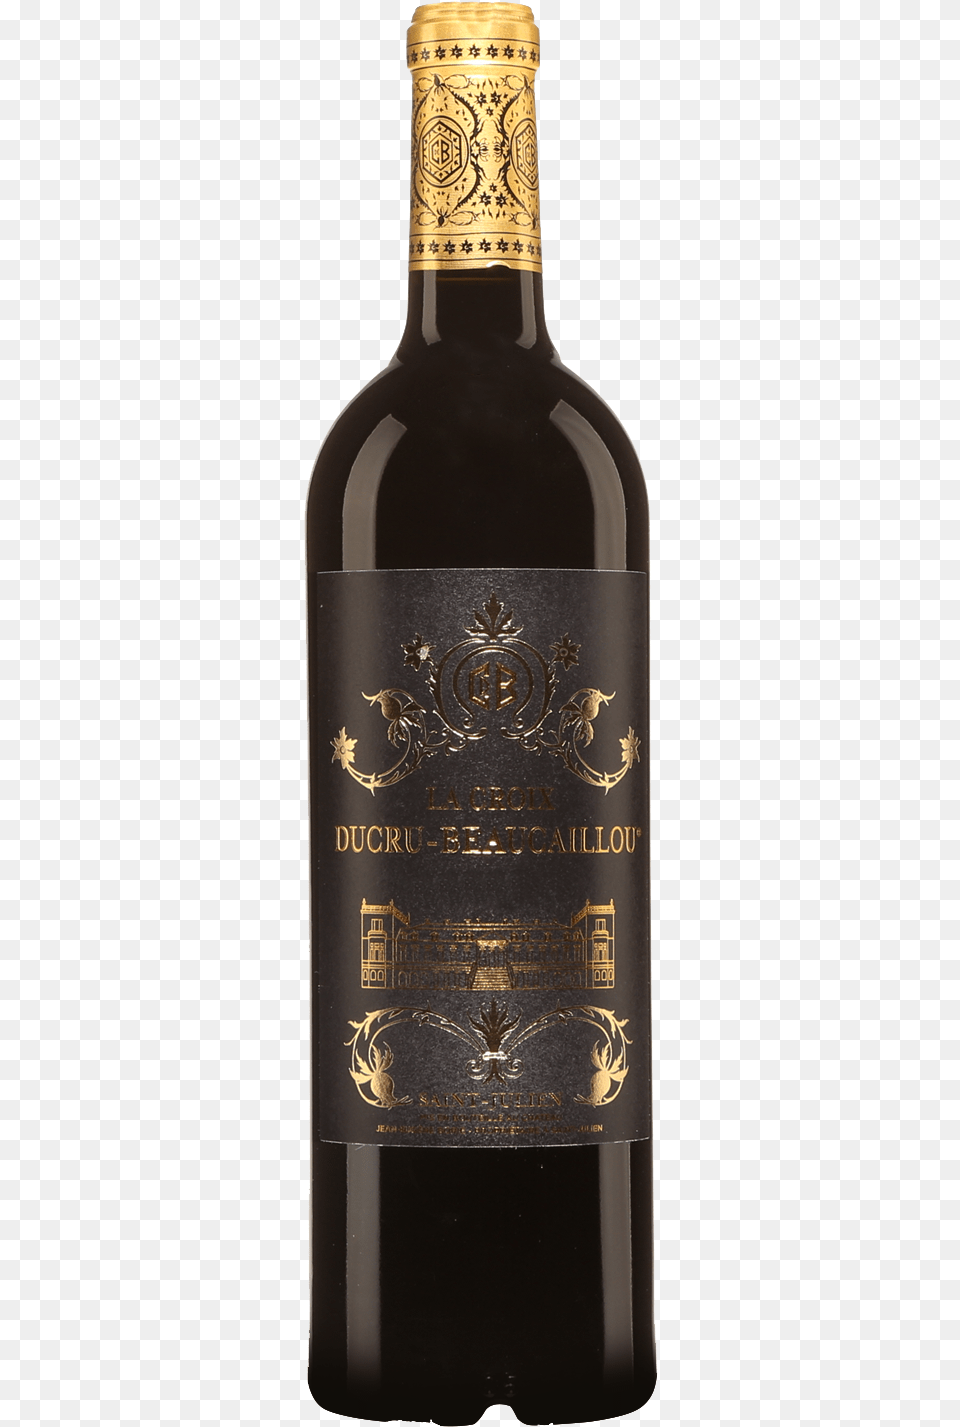 La Croix Ducru Beaucaillou Saint Julien Wine Bottle, Alcohol, Beverage, Liquor, Wine Bottle Png